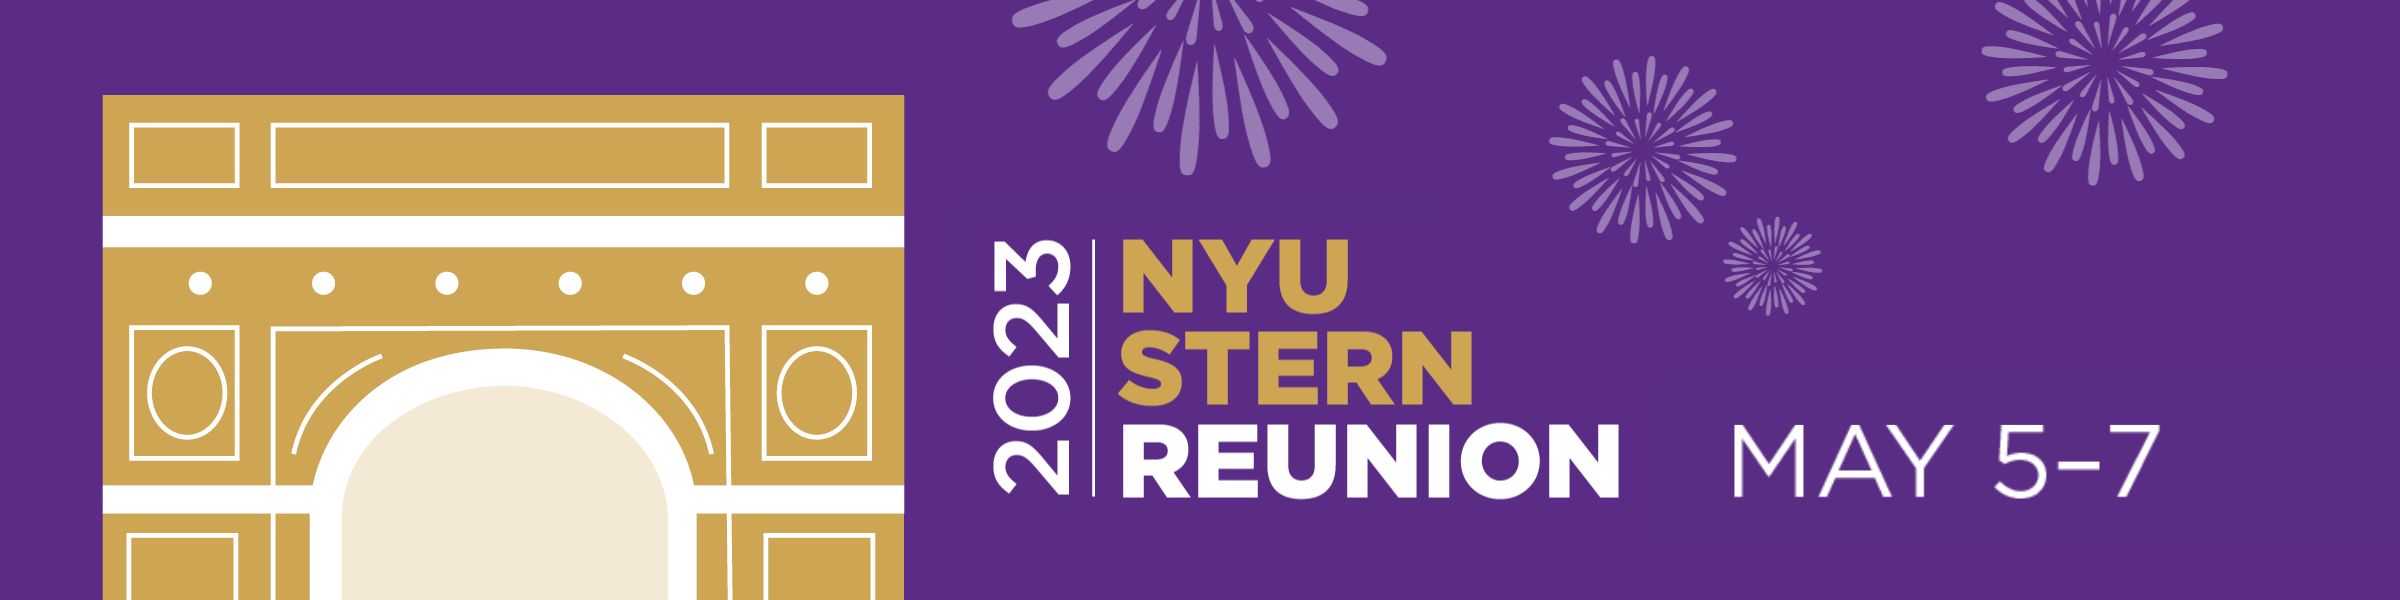 NYU Stern Class Book - Undergraduate Class of 2018